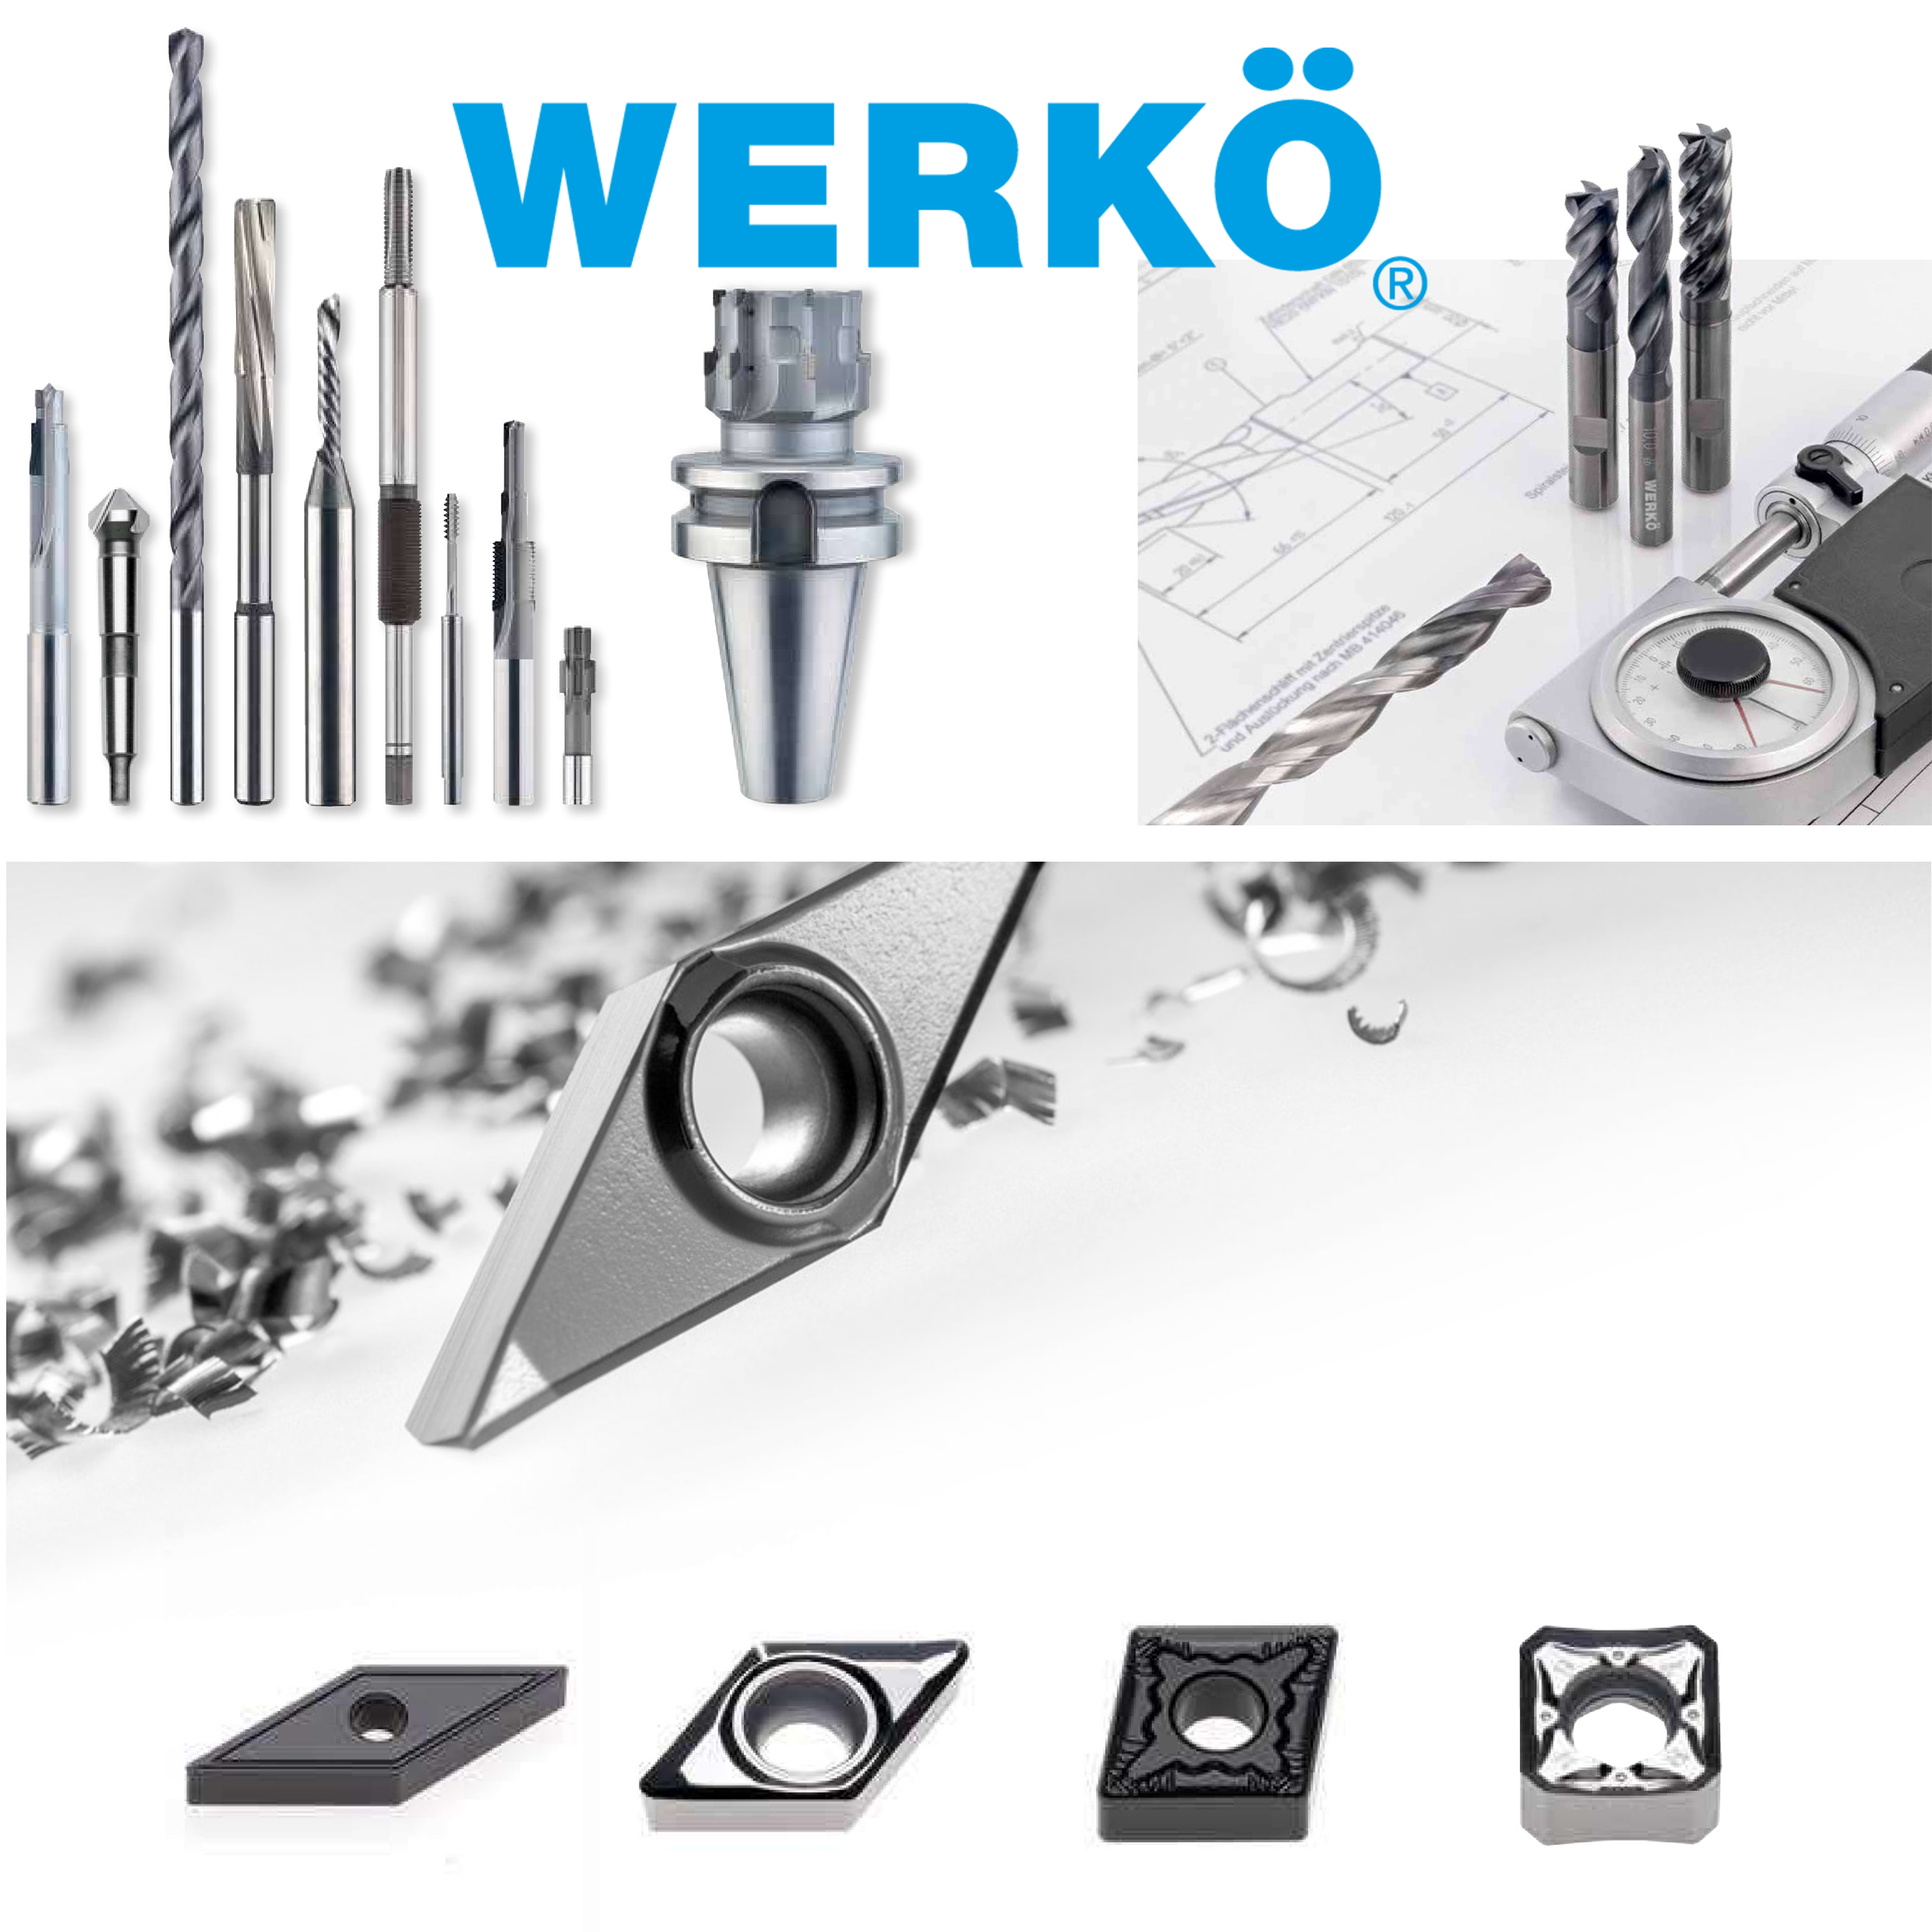 WERKOE GmbH